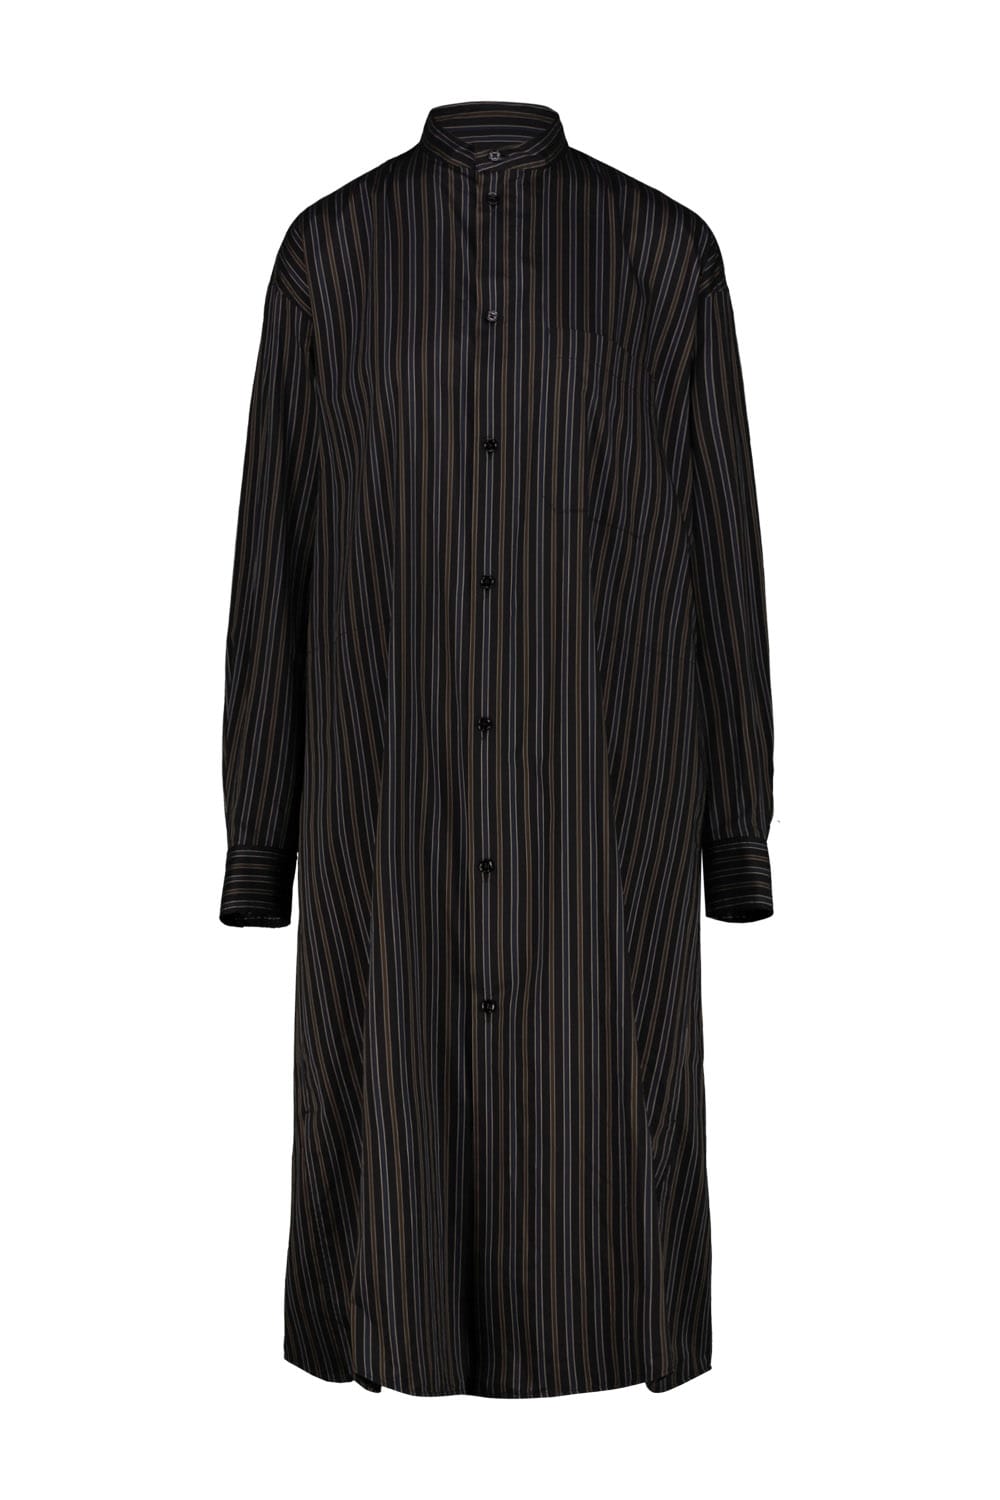 LEMAIRE OFFICER COLLAR SHIRT DRESS